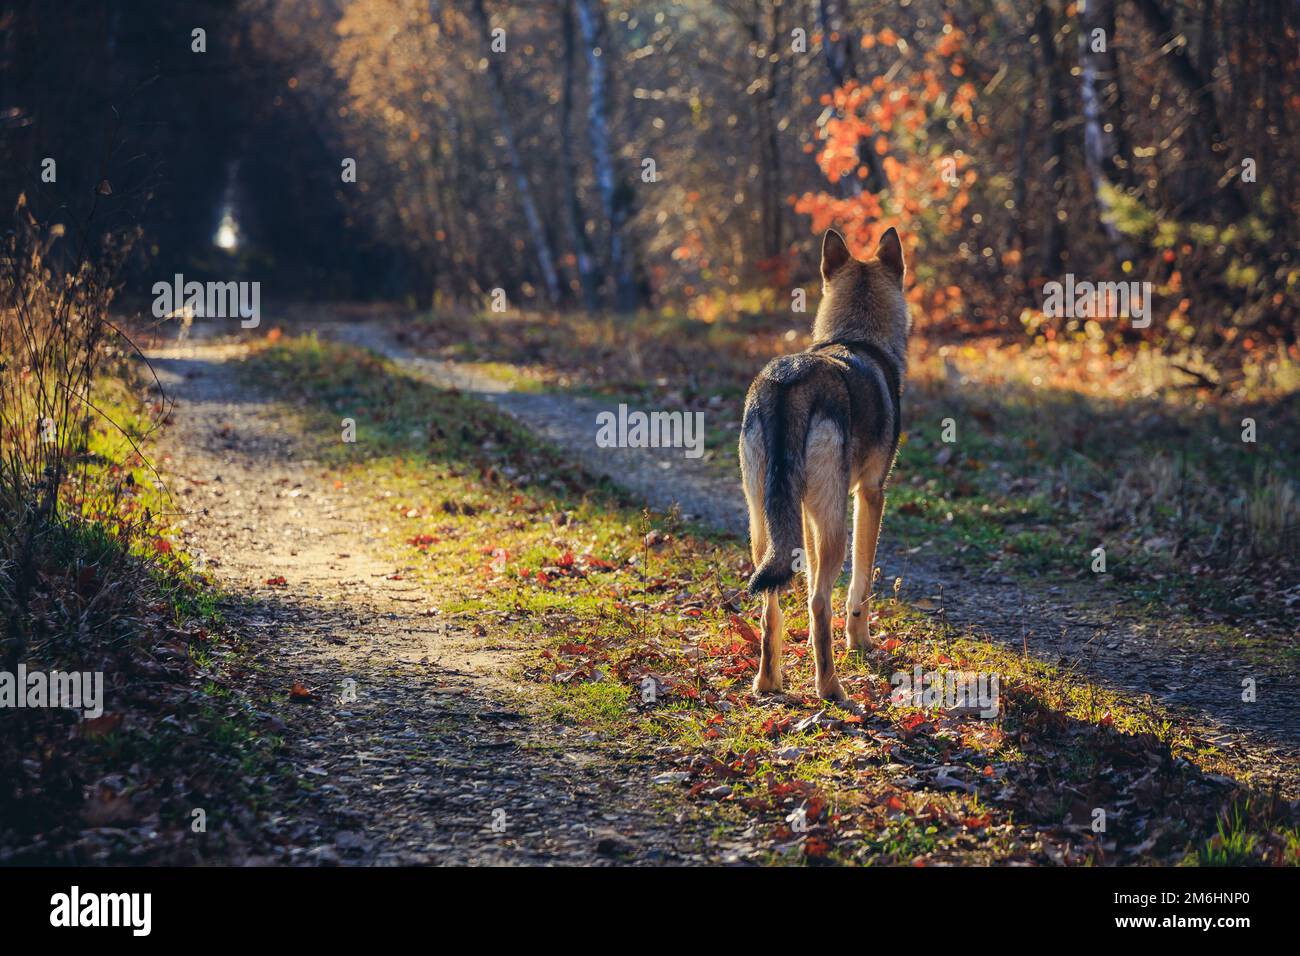 Chien tamasan sur une route forestière pendant l'automne en Pologne Banque D'Images